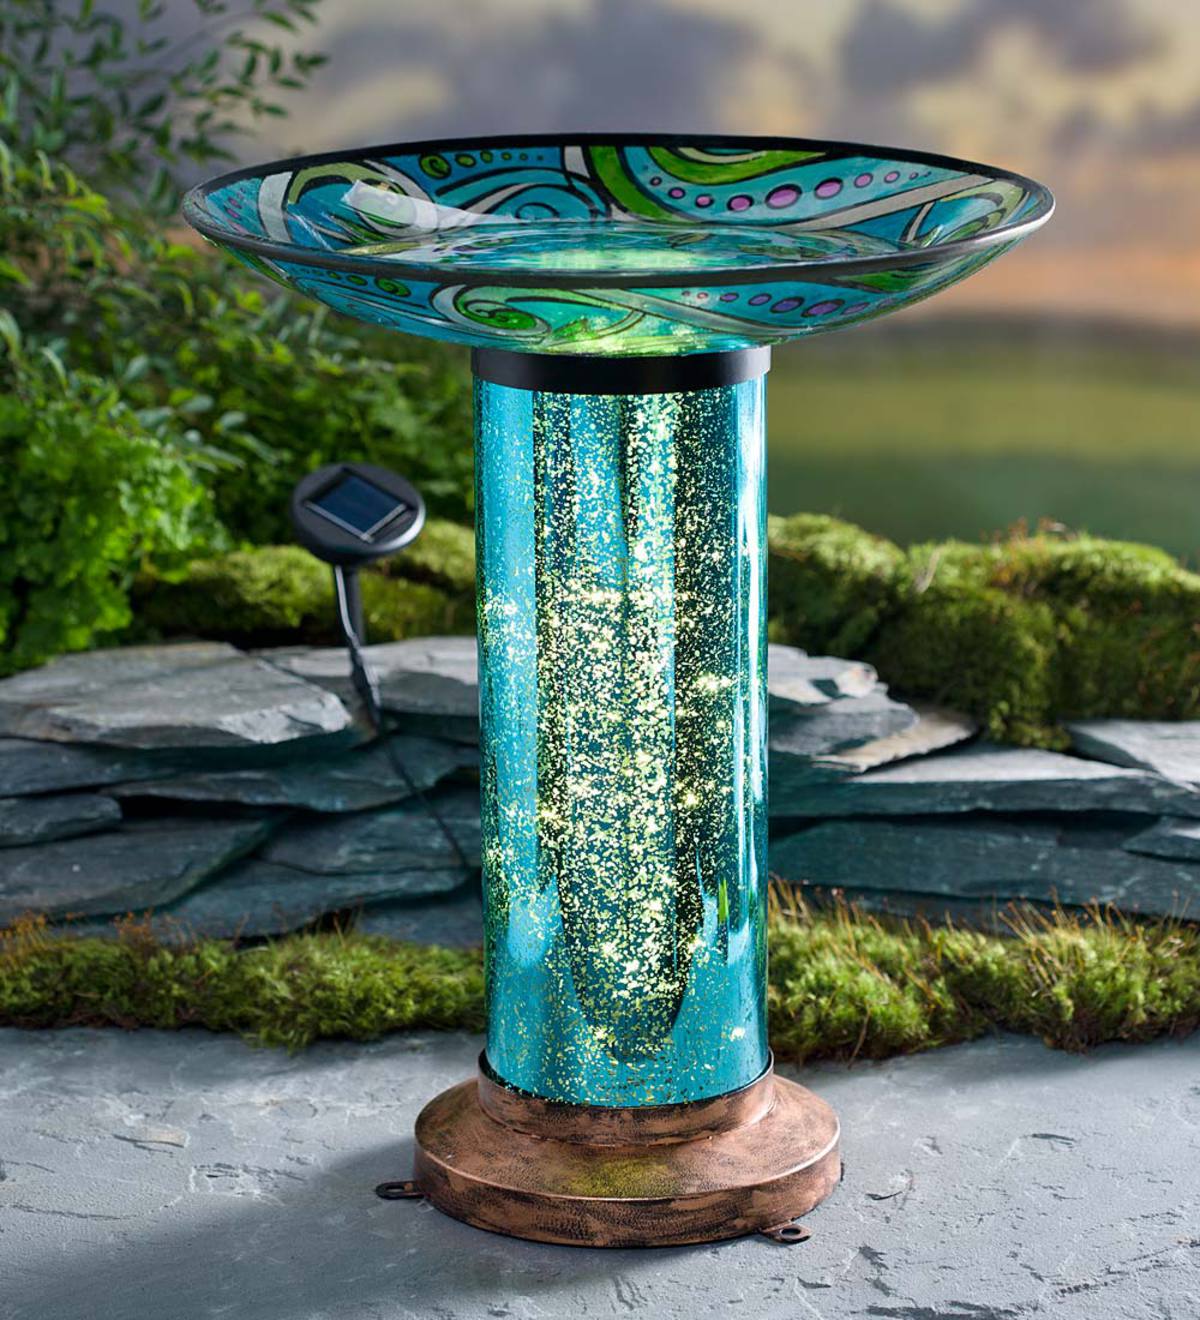 Details about   Solar Lighted Bird bath w/ Planter Garden Decoration Birdbath Water Bowl Raised 